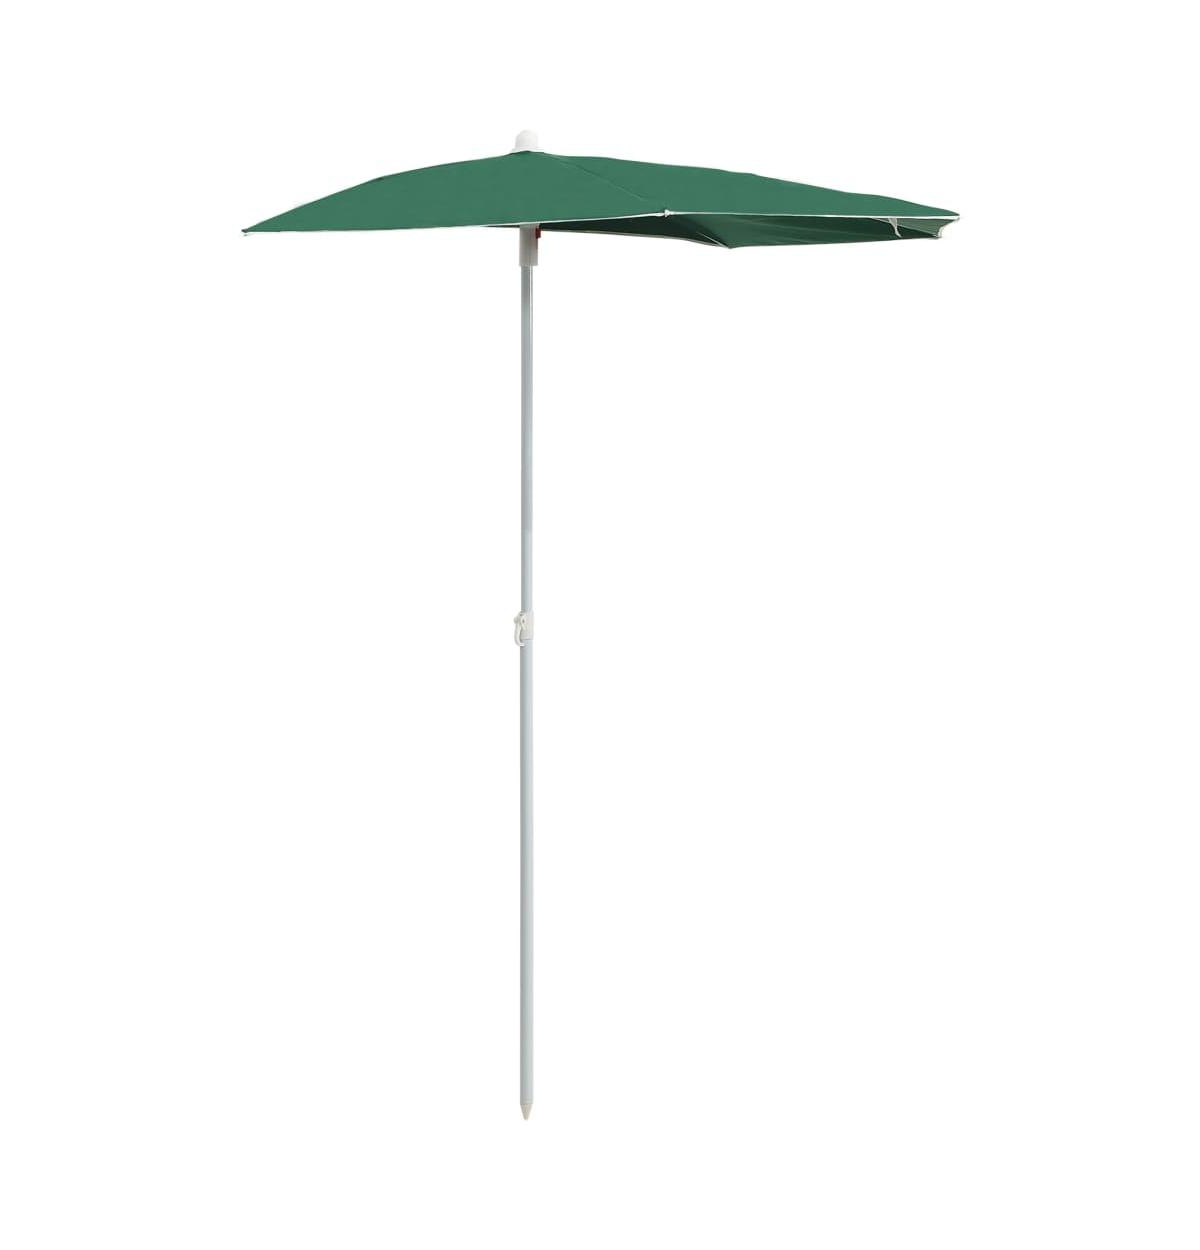 Garden Half Parasol with Pole 70.9"x35.4" Green - Green